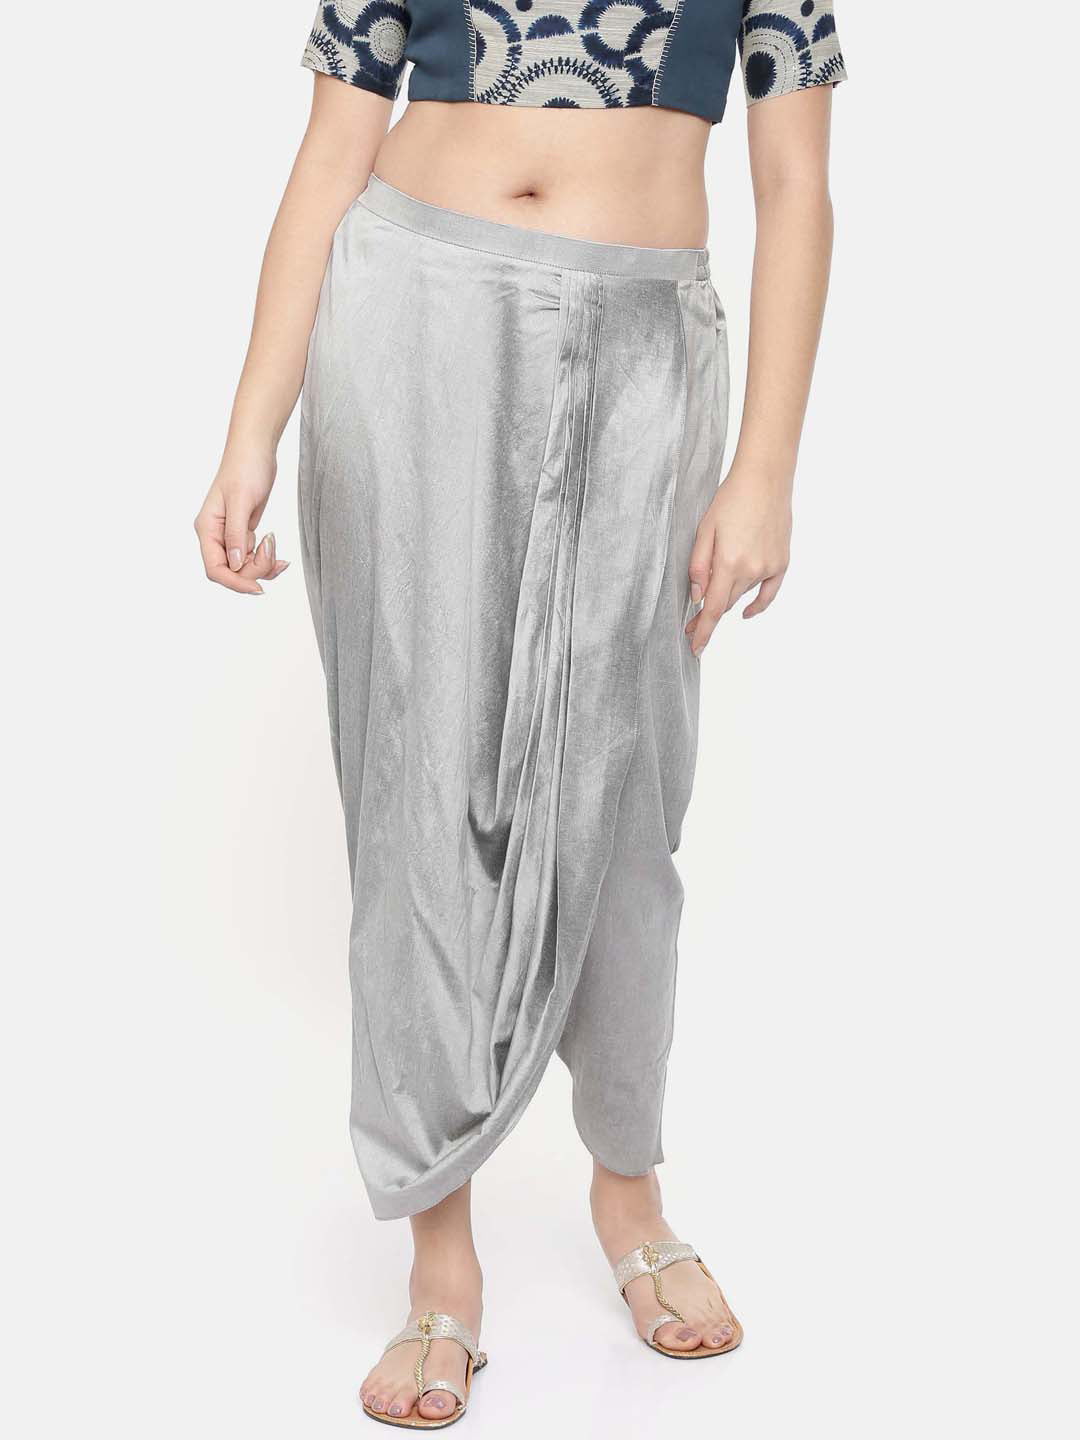 Silver grey cotton silk dhoti pants - ASDP016 - Asmi Shop